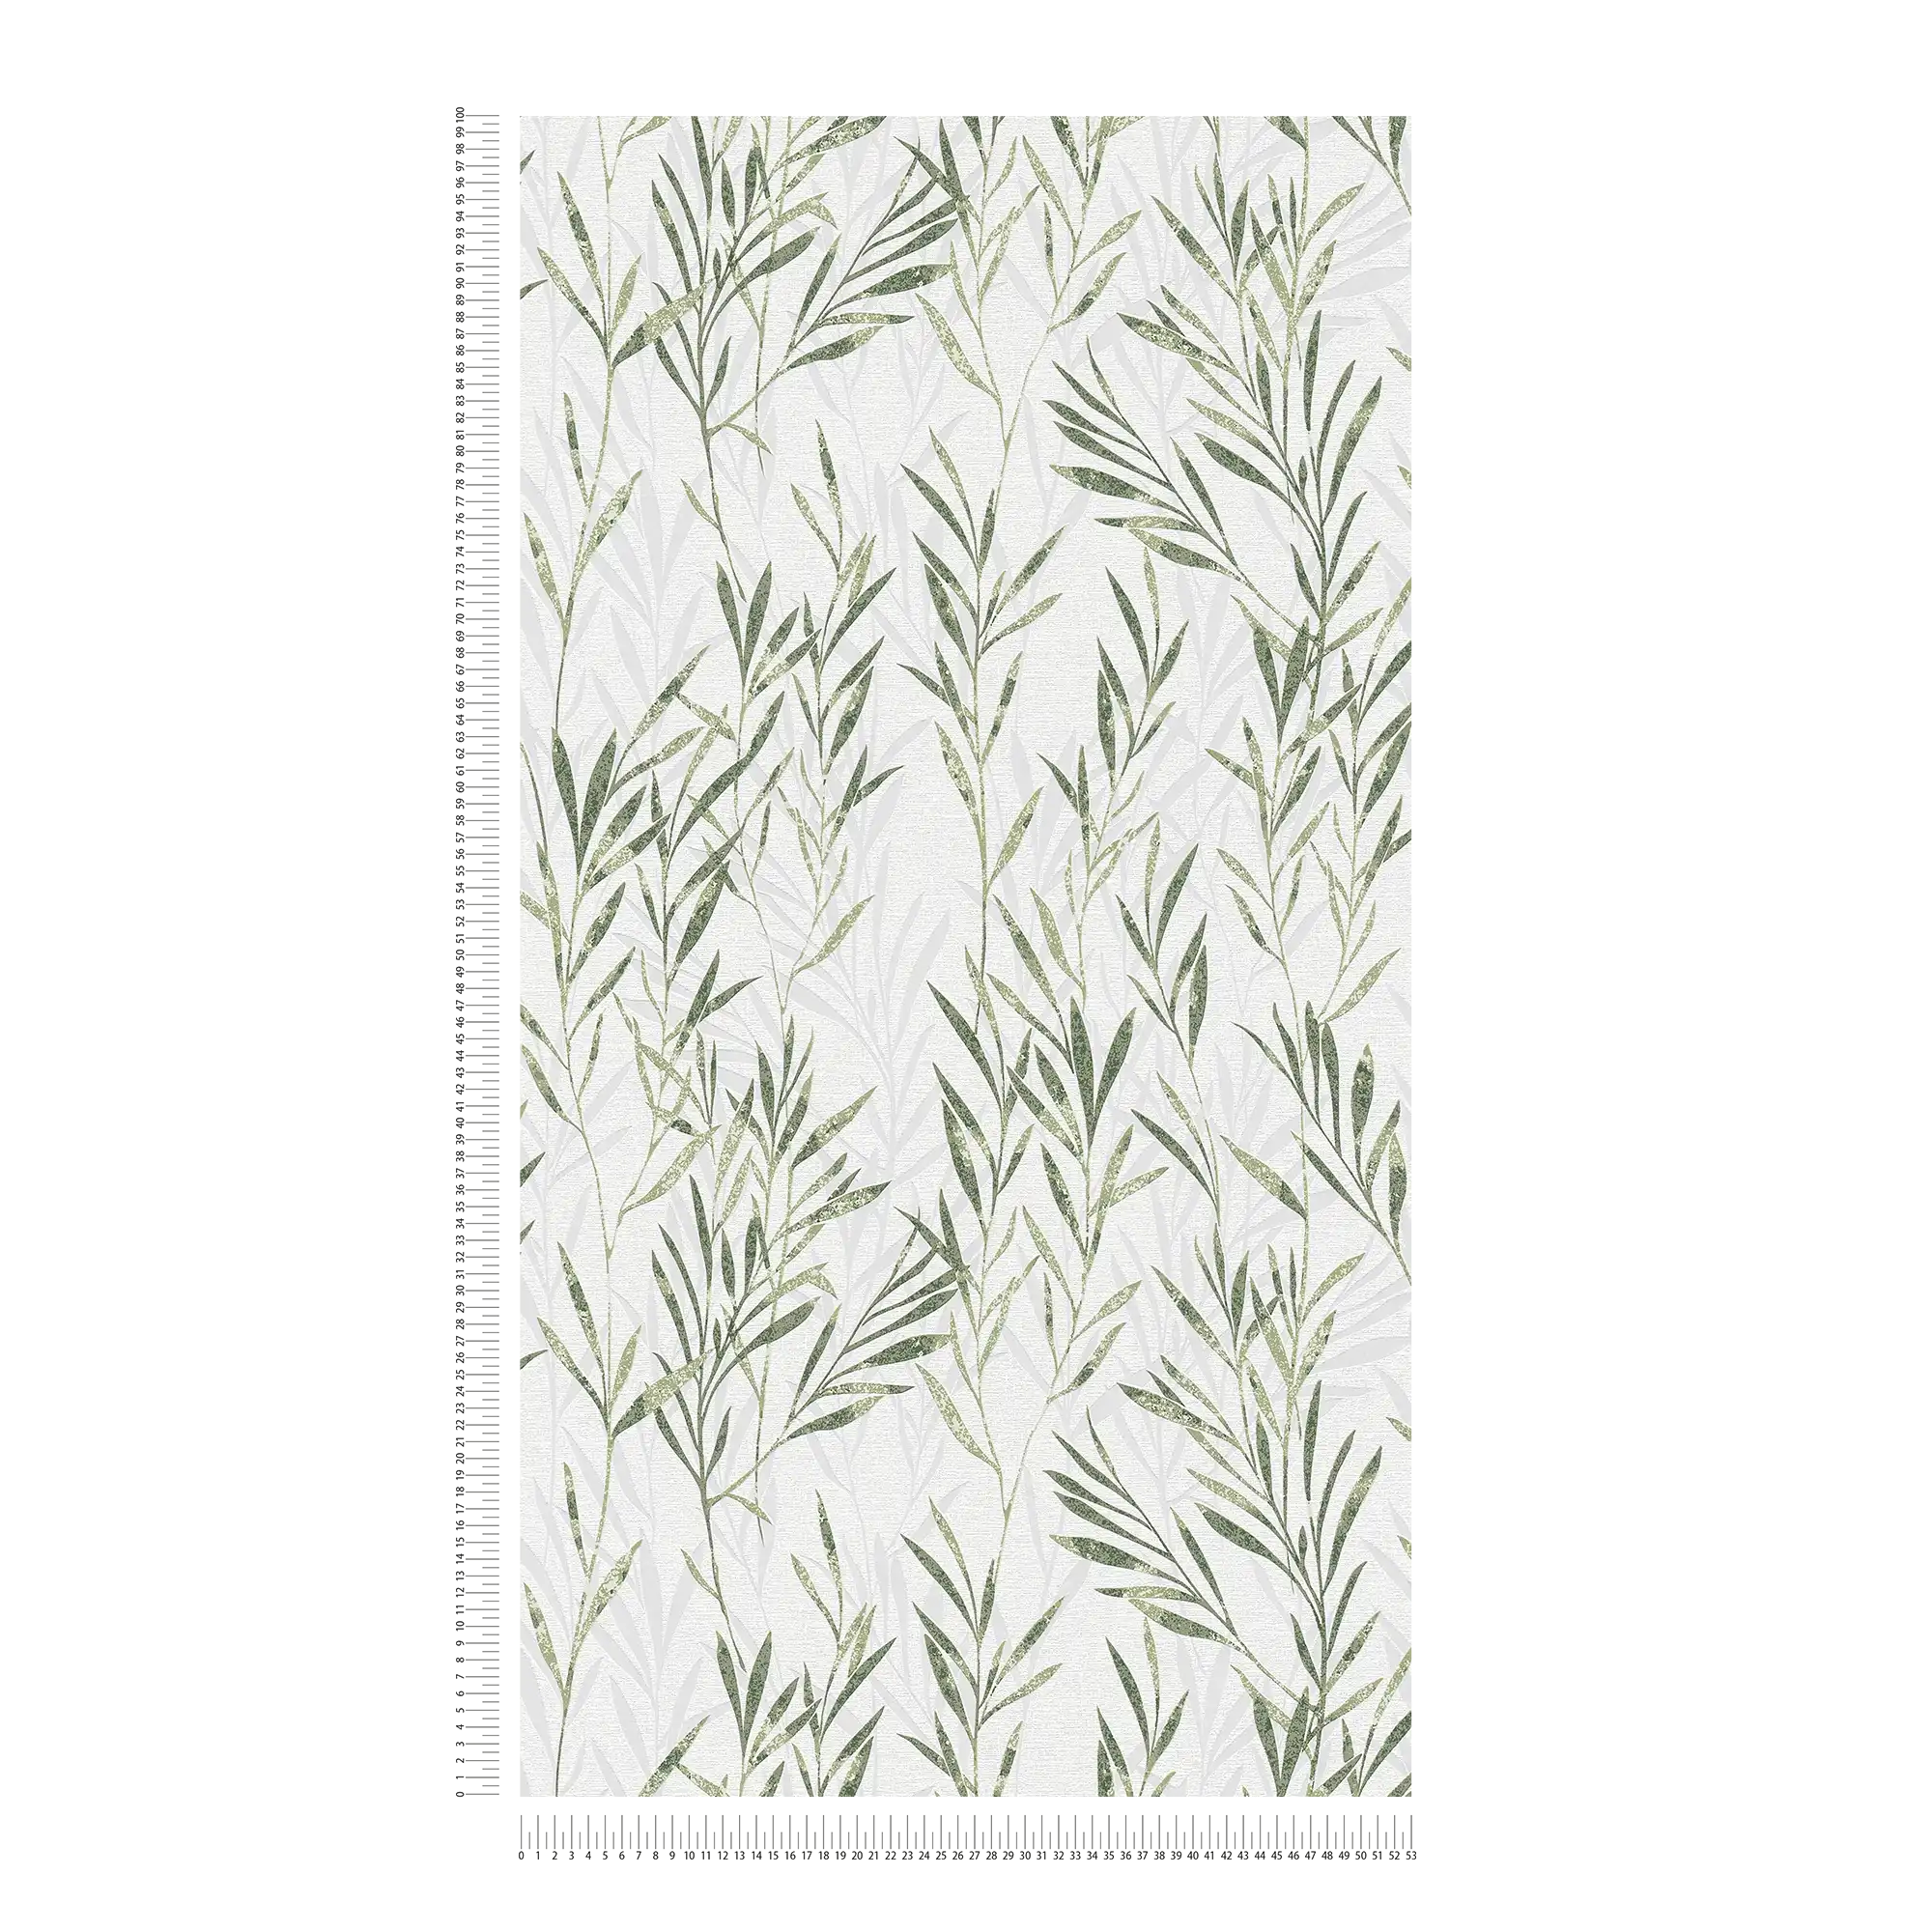             Vliestapete Blätter Design & Rankenmuster – Grün, Weiß
        